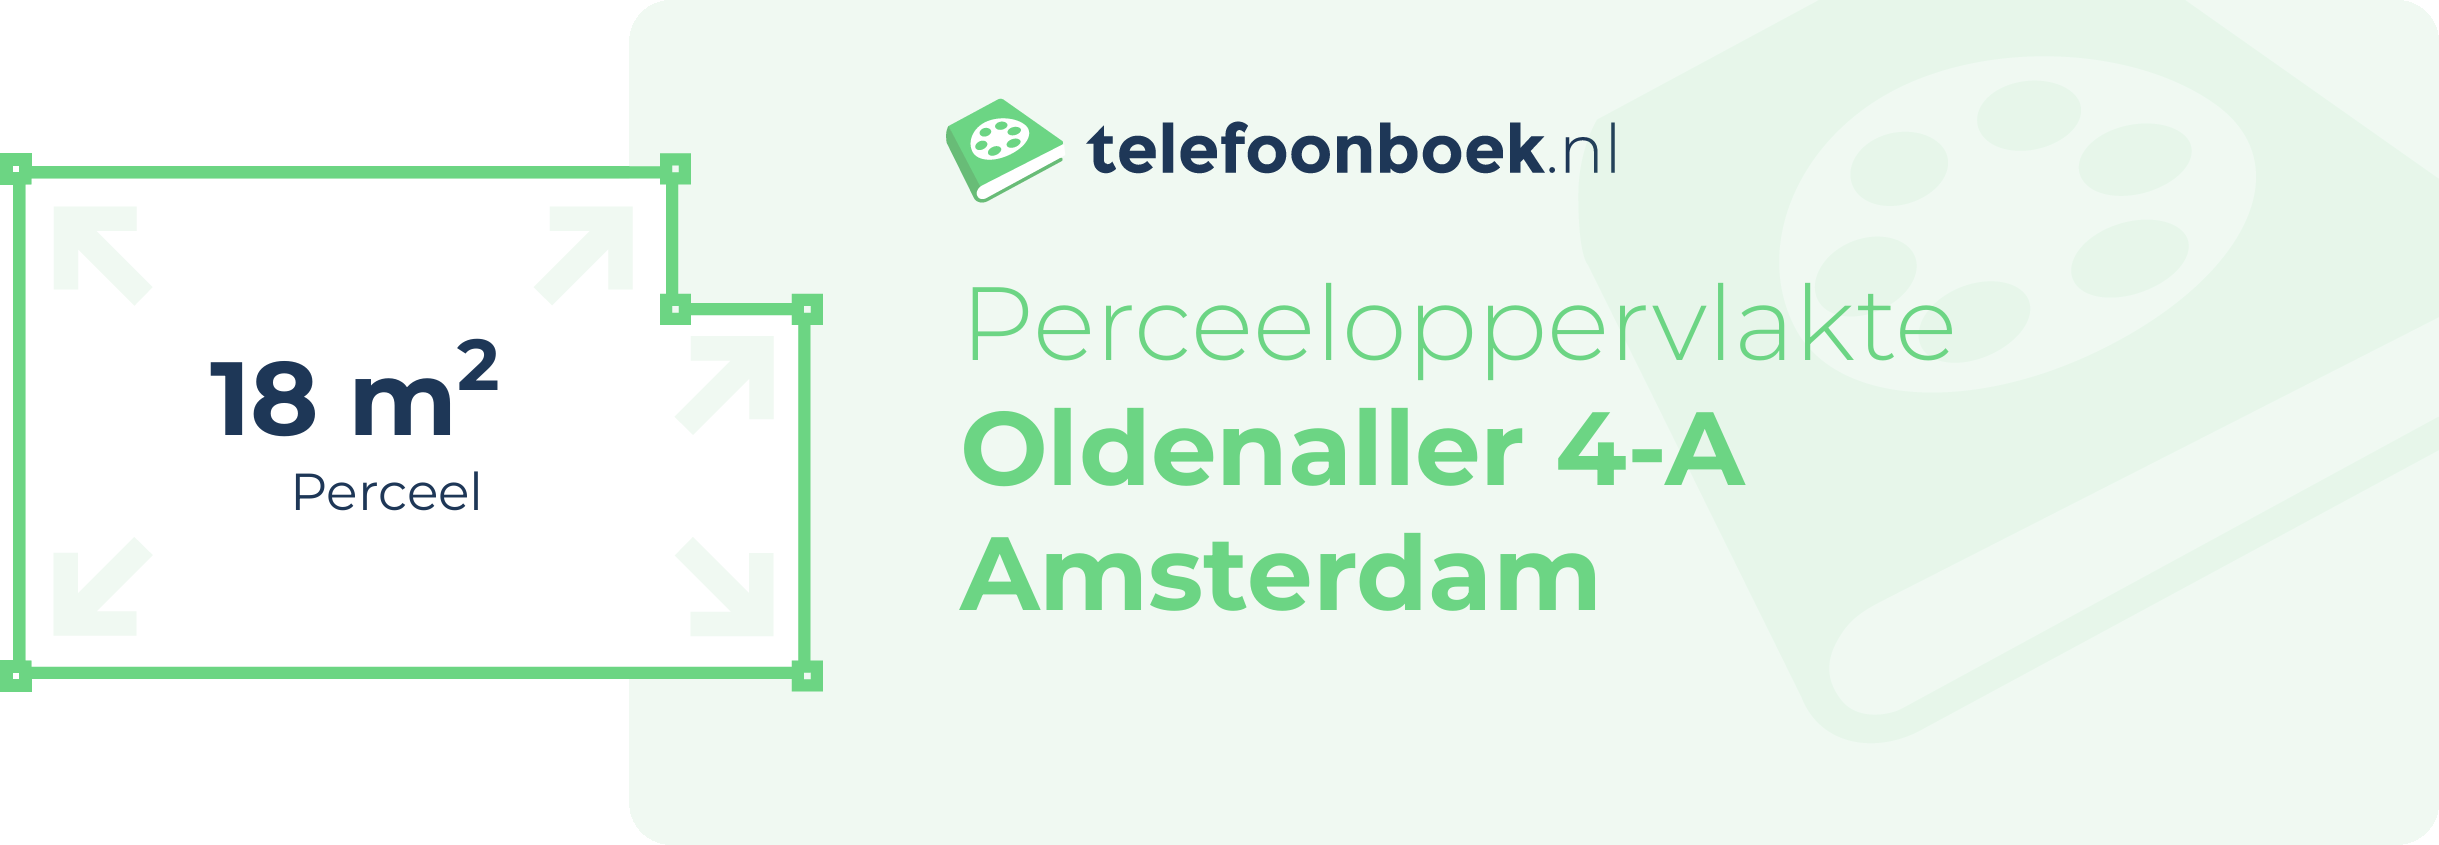 Perceeloppervlakte Oldenaller 4-A Amsterdam